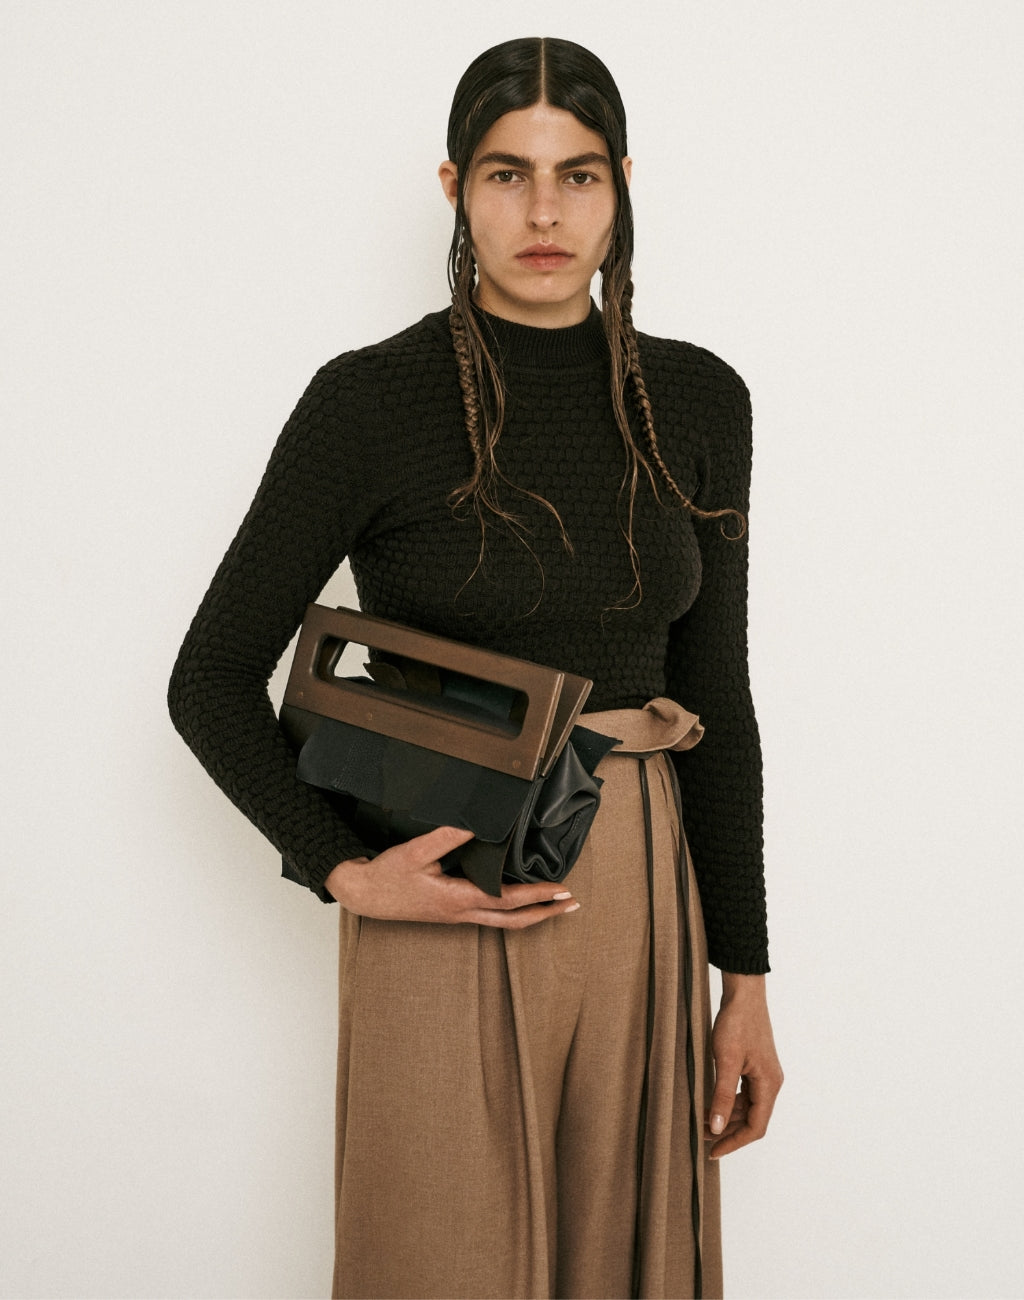 PODYH - Dranka Bag | Brown, buy at DOORS NYC